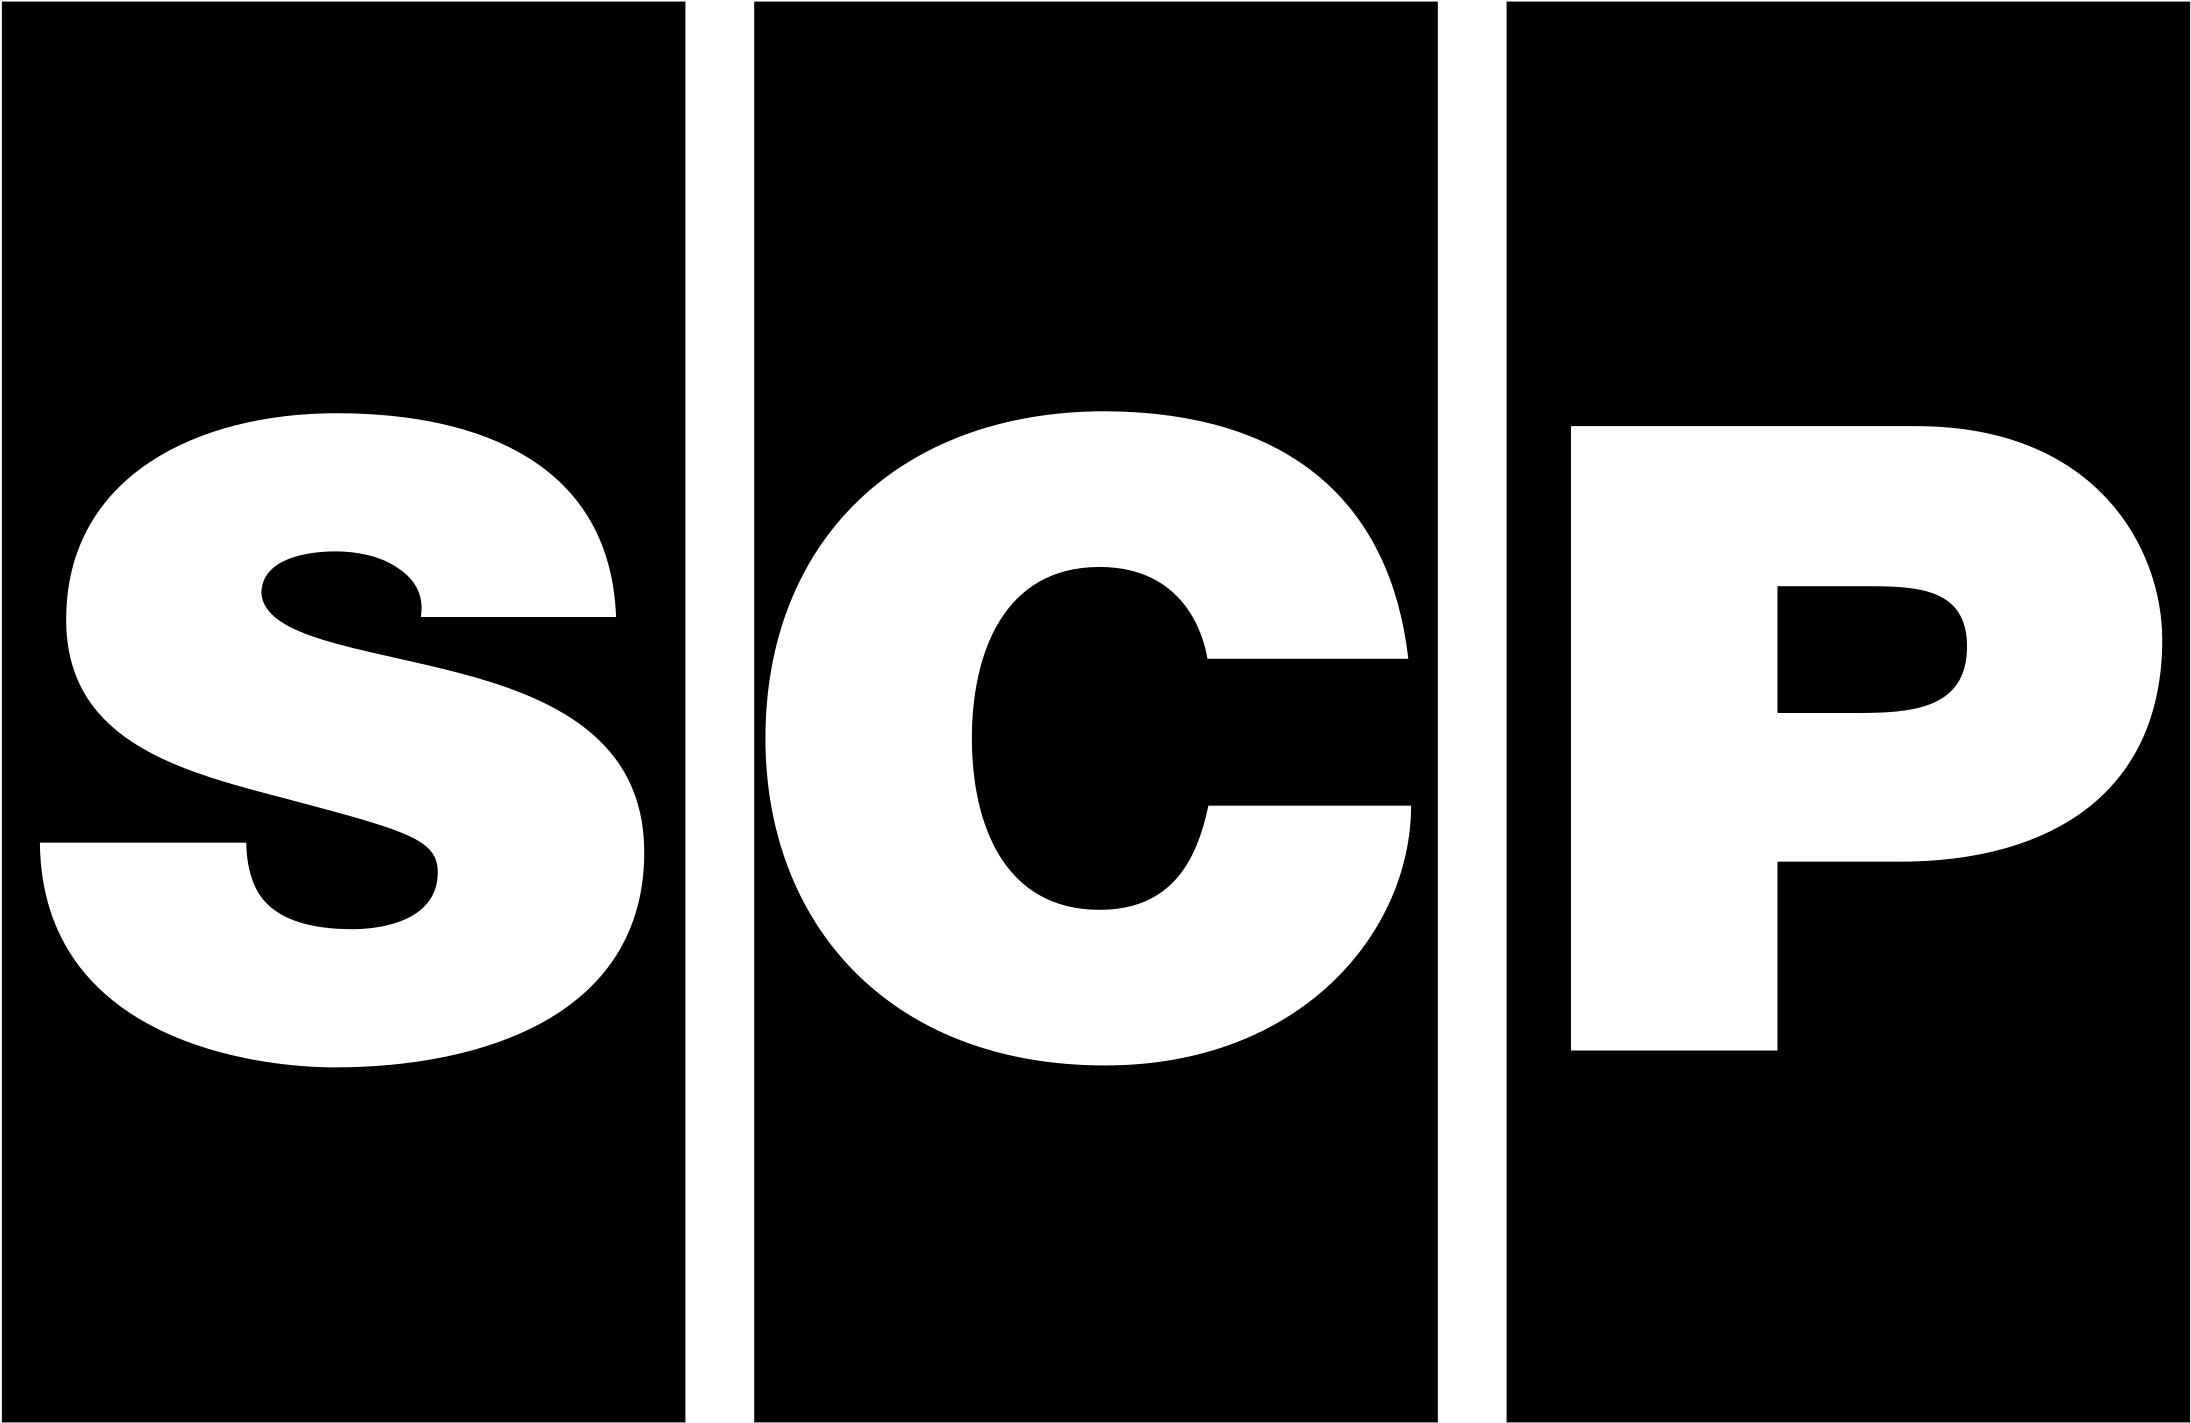 Scp ошибка. SCP эмблема. Логотип фонда SCP. SCP надпись. Надпись SCP фонд.